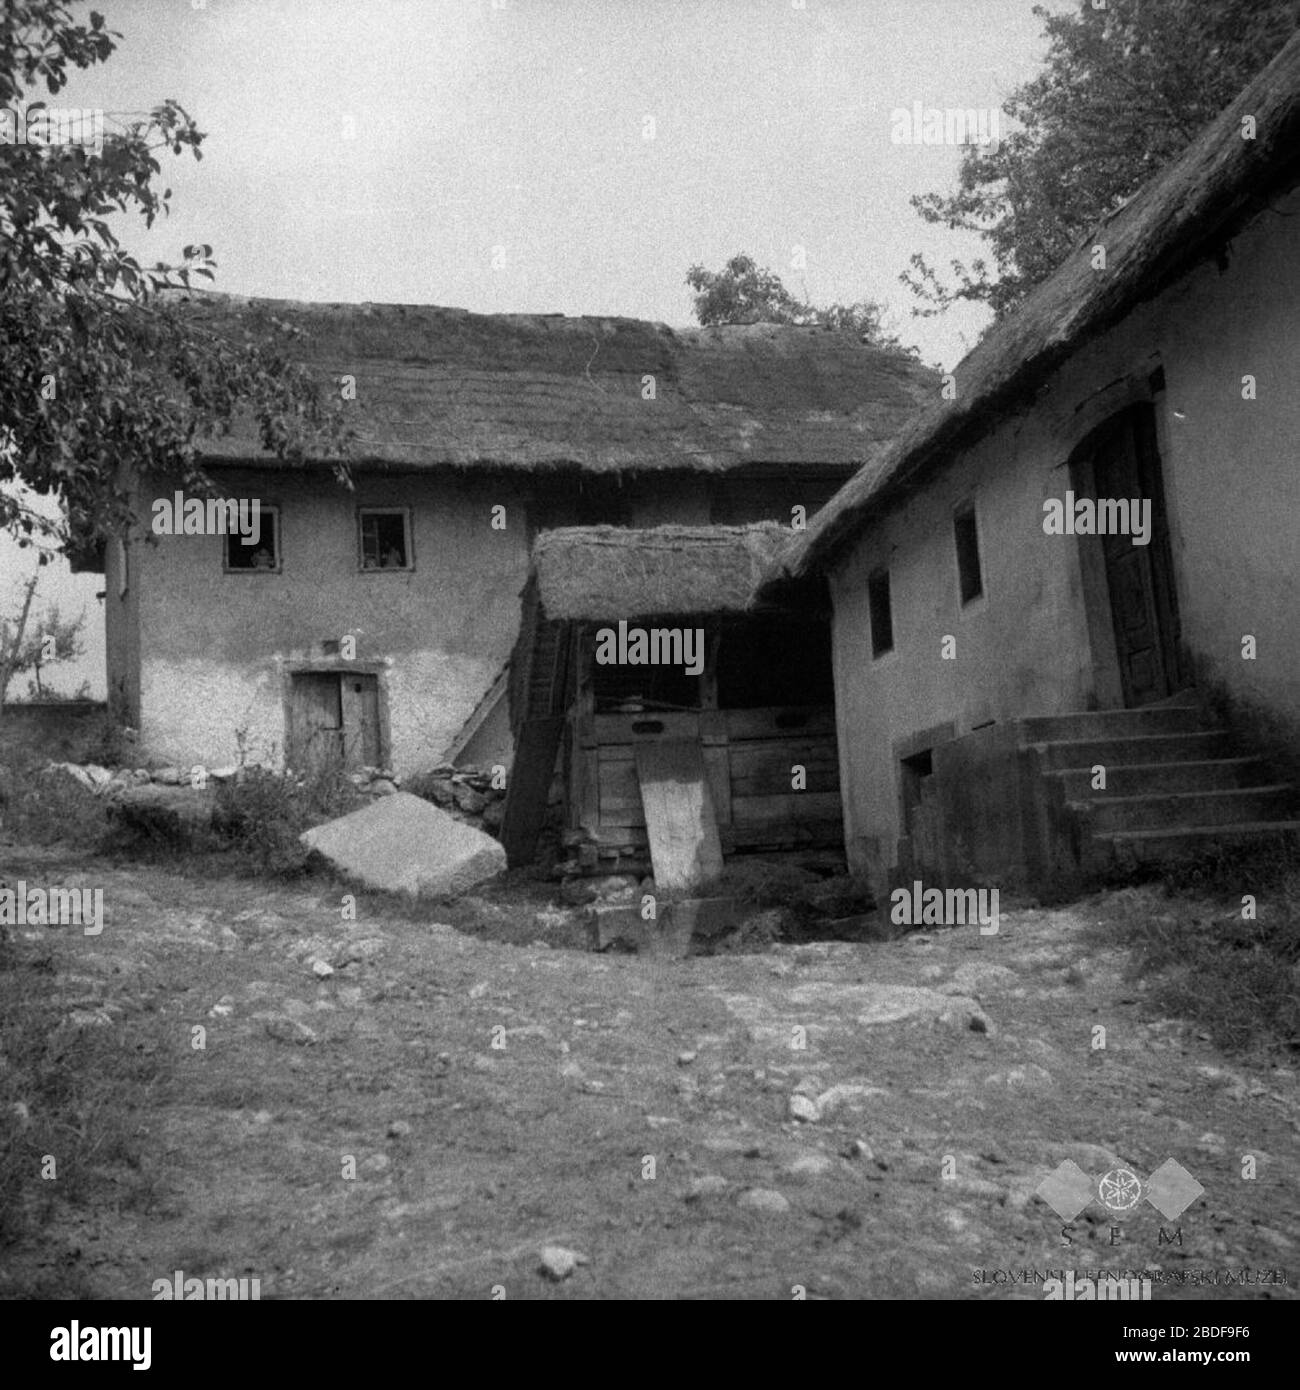 lovenščina: Nekina hísa, Valična vas.; Agosto de 1957; esta imagen o medio  está disponible en el sitio web del Museo Etnográfico Esloveno bajo el  número de referencia zuzemberk/f0000014203.esta etiqueta no indica el